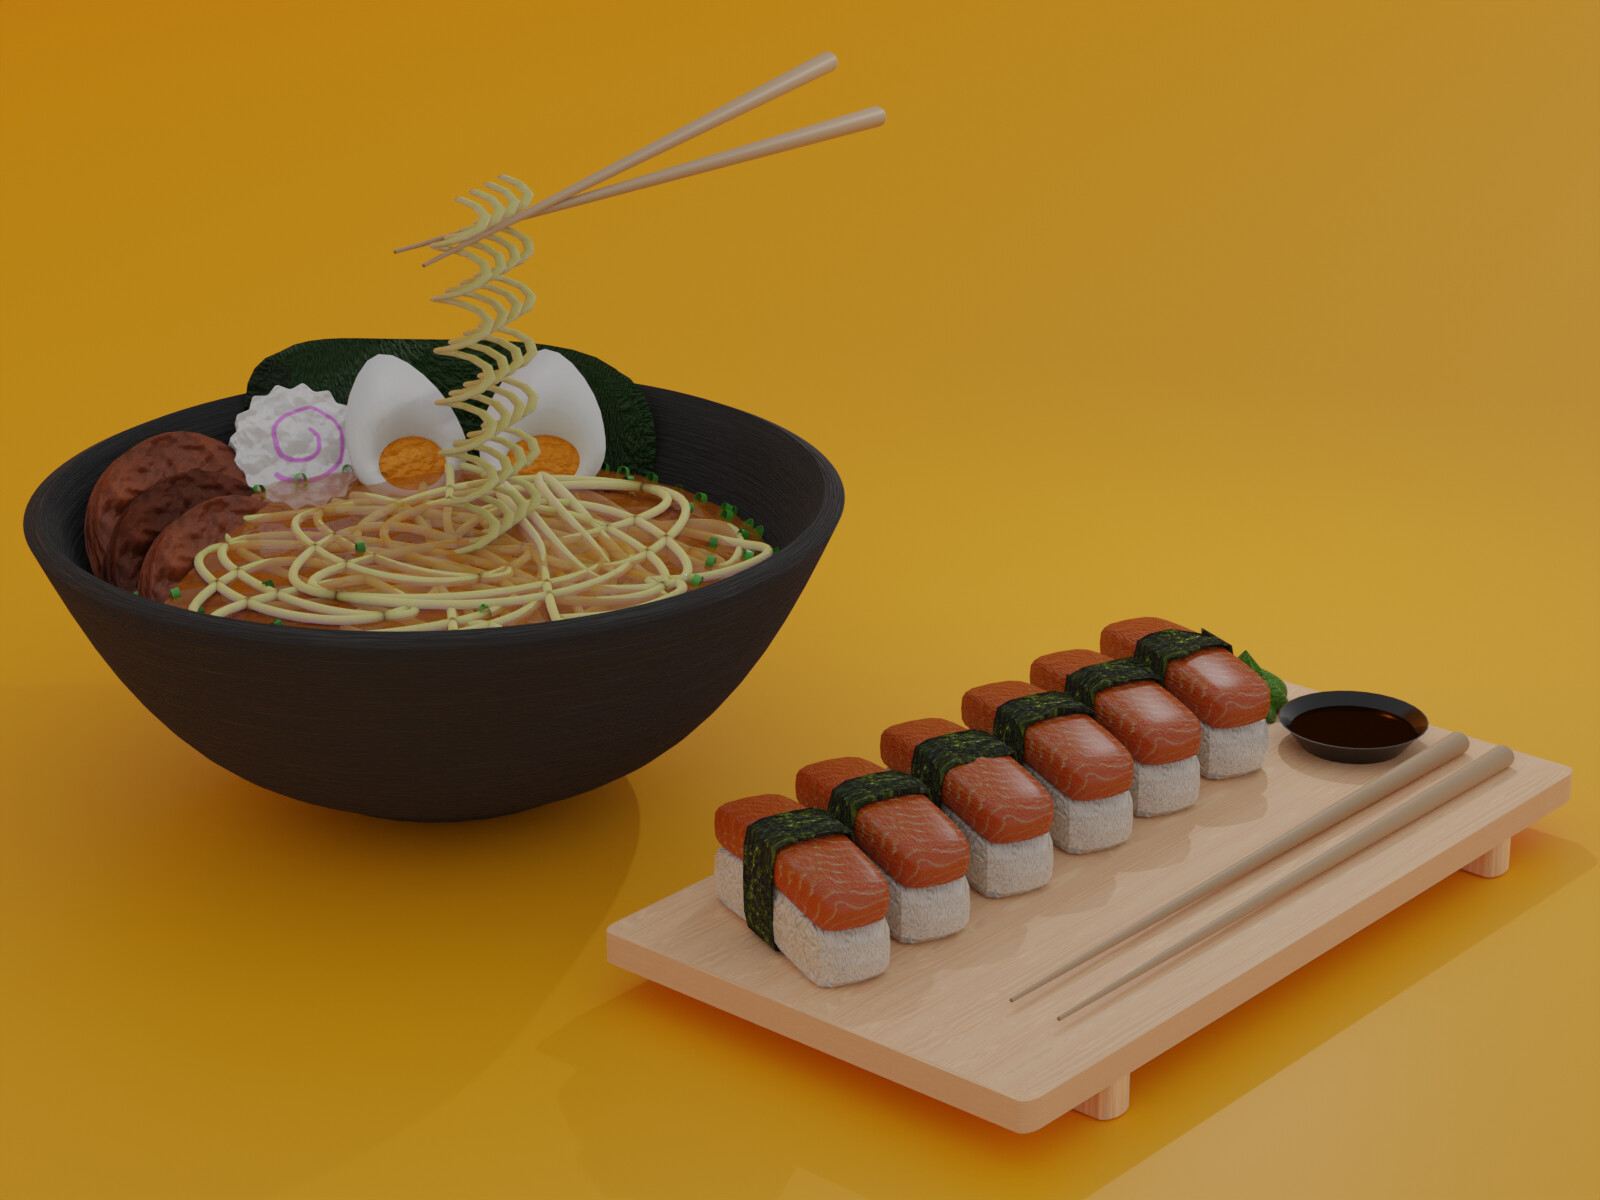 https://cdna.artstation.com/p/assets/images/images/060/541/708/large/mcwartegz-sushi-with-ramen.jpg?1678800993